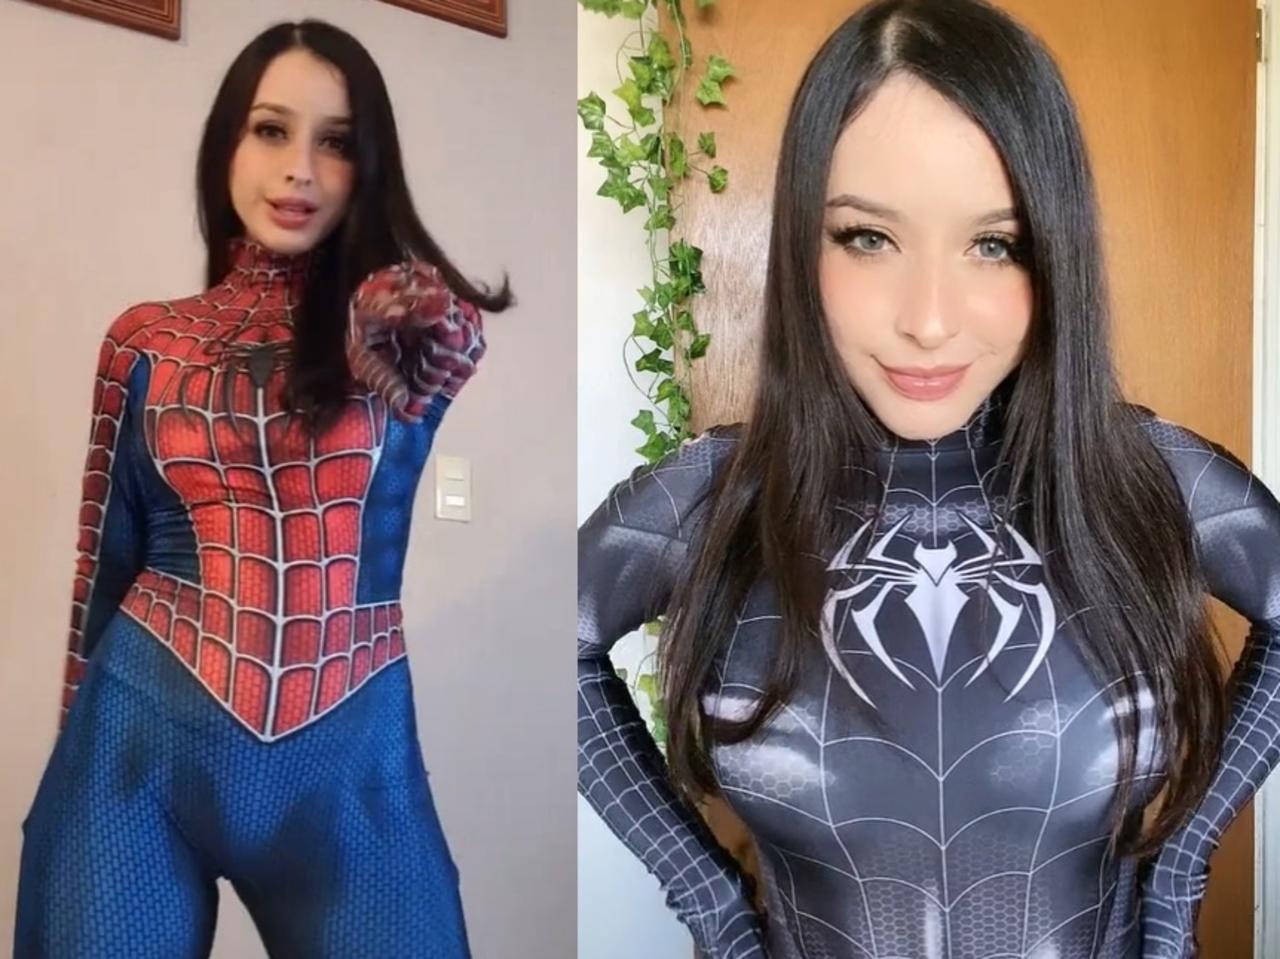 La 'tiktoker' es toda una sensación en la red social china gracias a sus videos luciendo los atuendos de 'Spider-Man' (CAPTURA) 